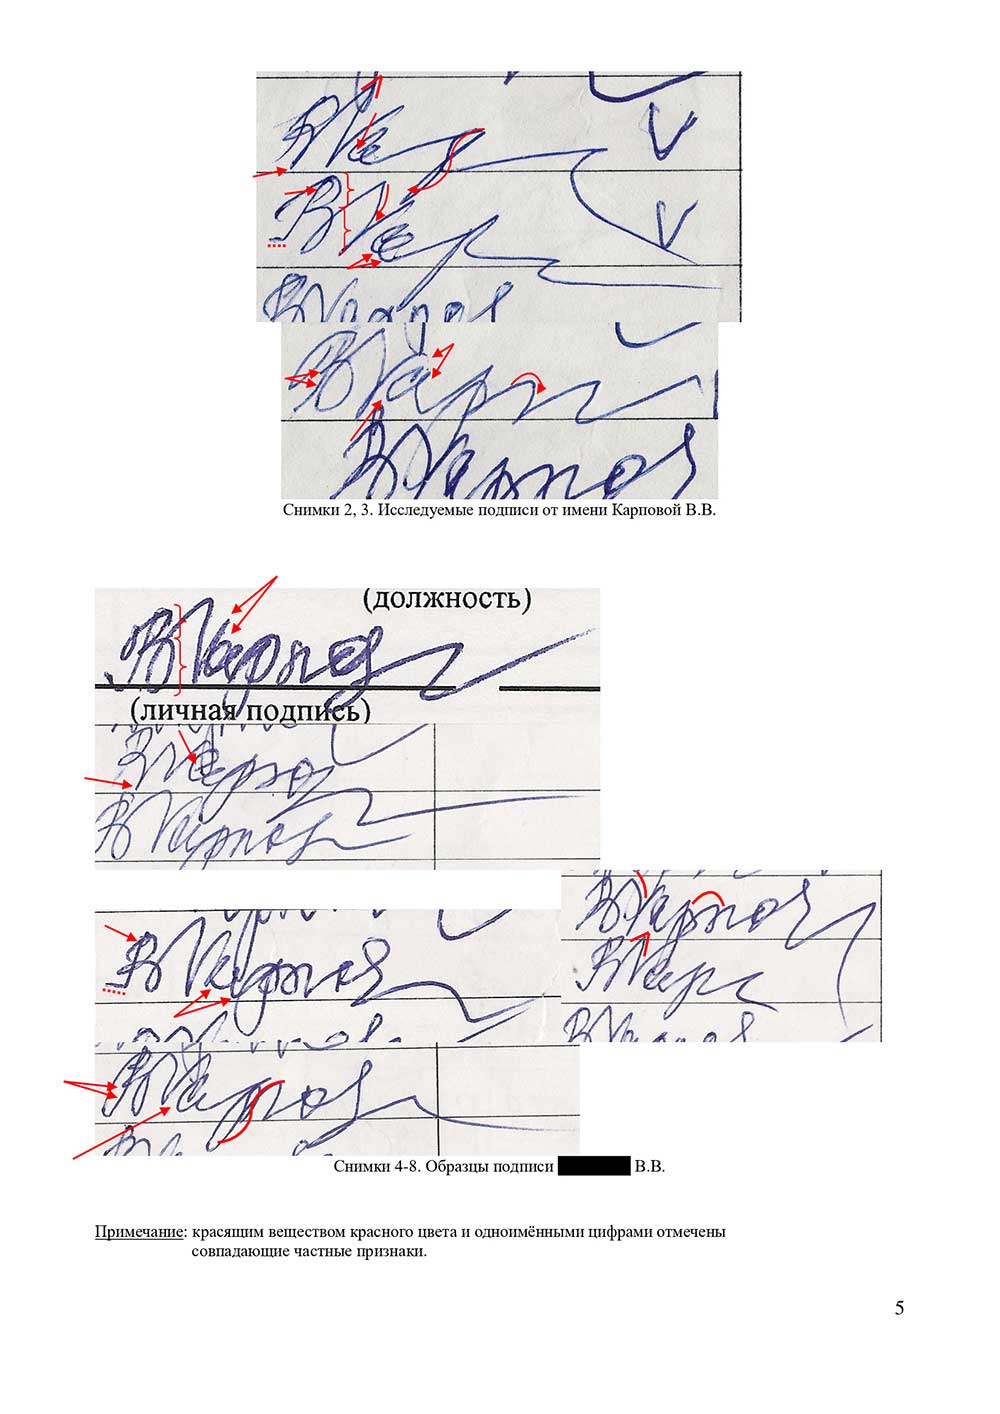 Судебная и досудебная почерковедческая экспертиза документов. Графологическая экспертиза почерка, подписи в Новосибирске